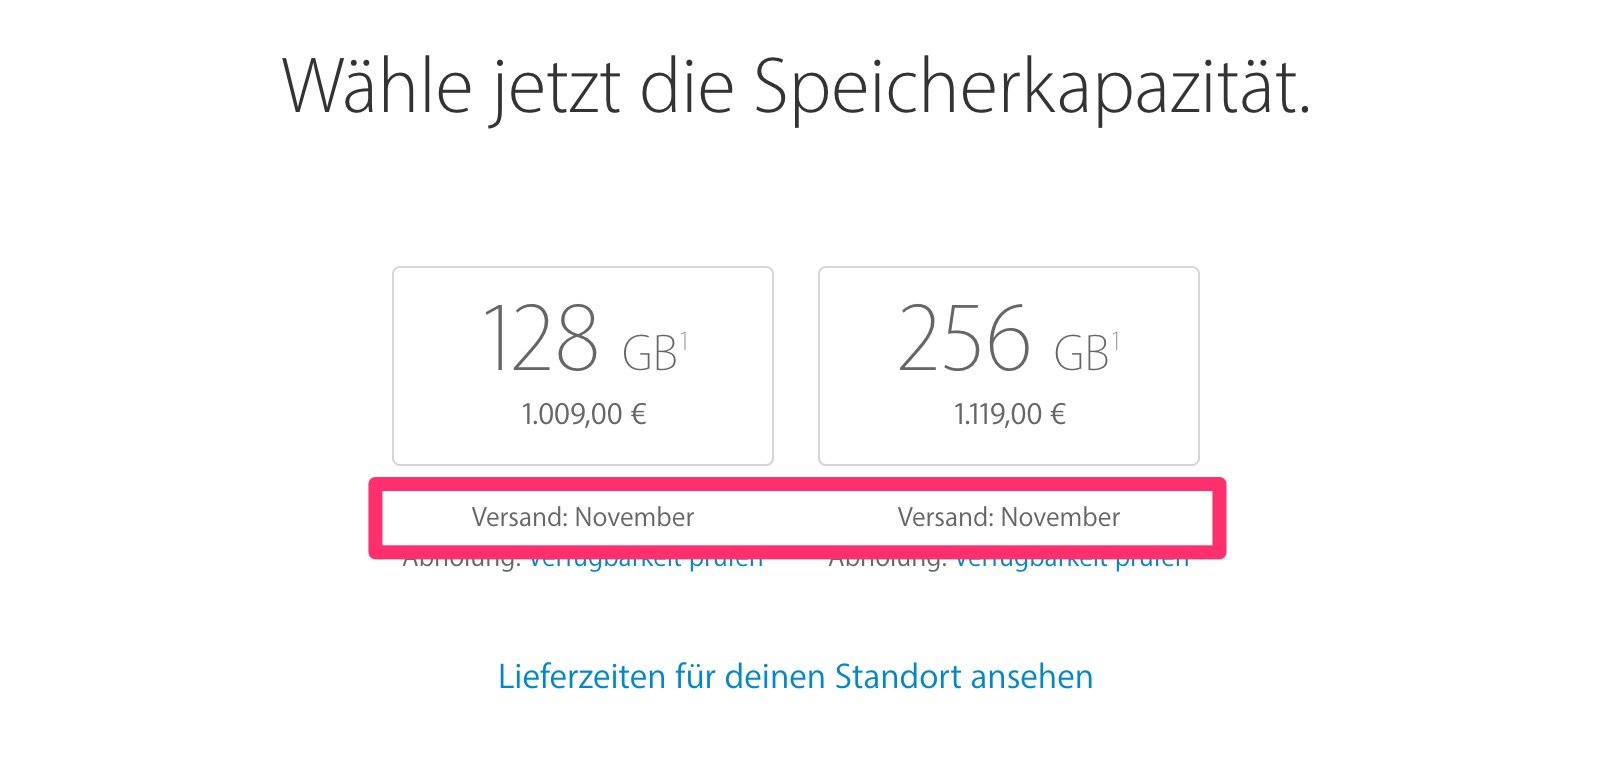 iPhone 7 (Plus) schon ausverkauft: Lieferzeit / Lieferung im November! 10